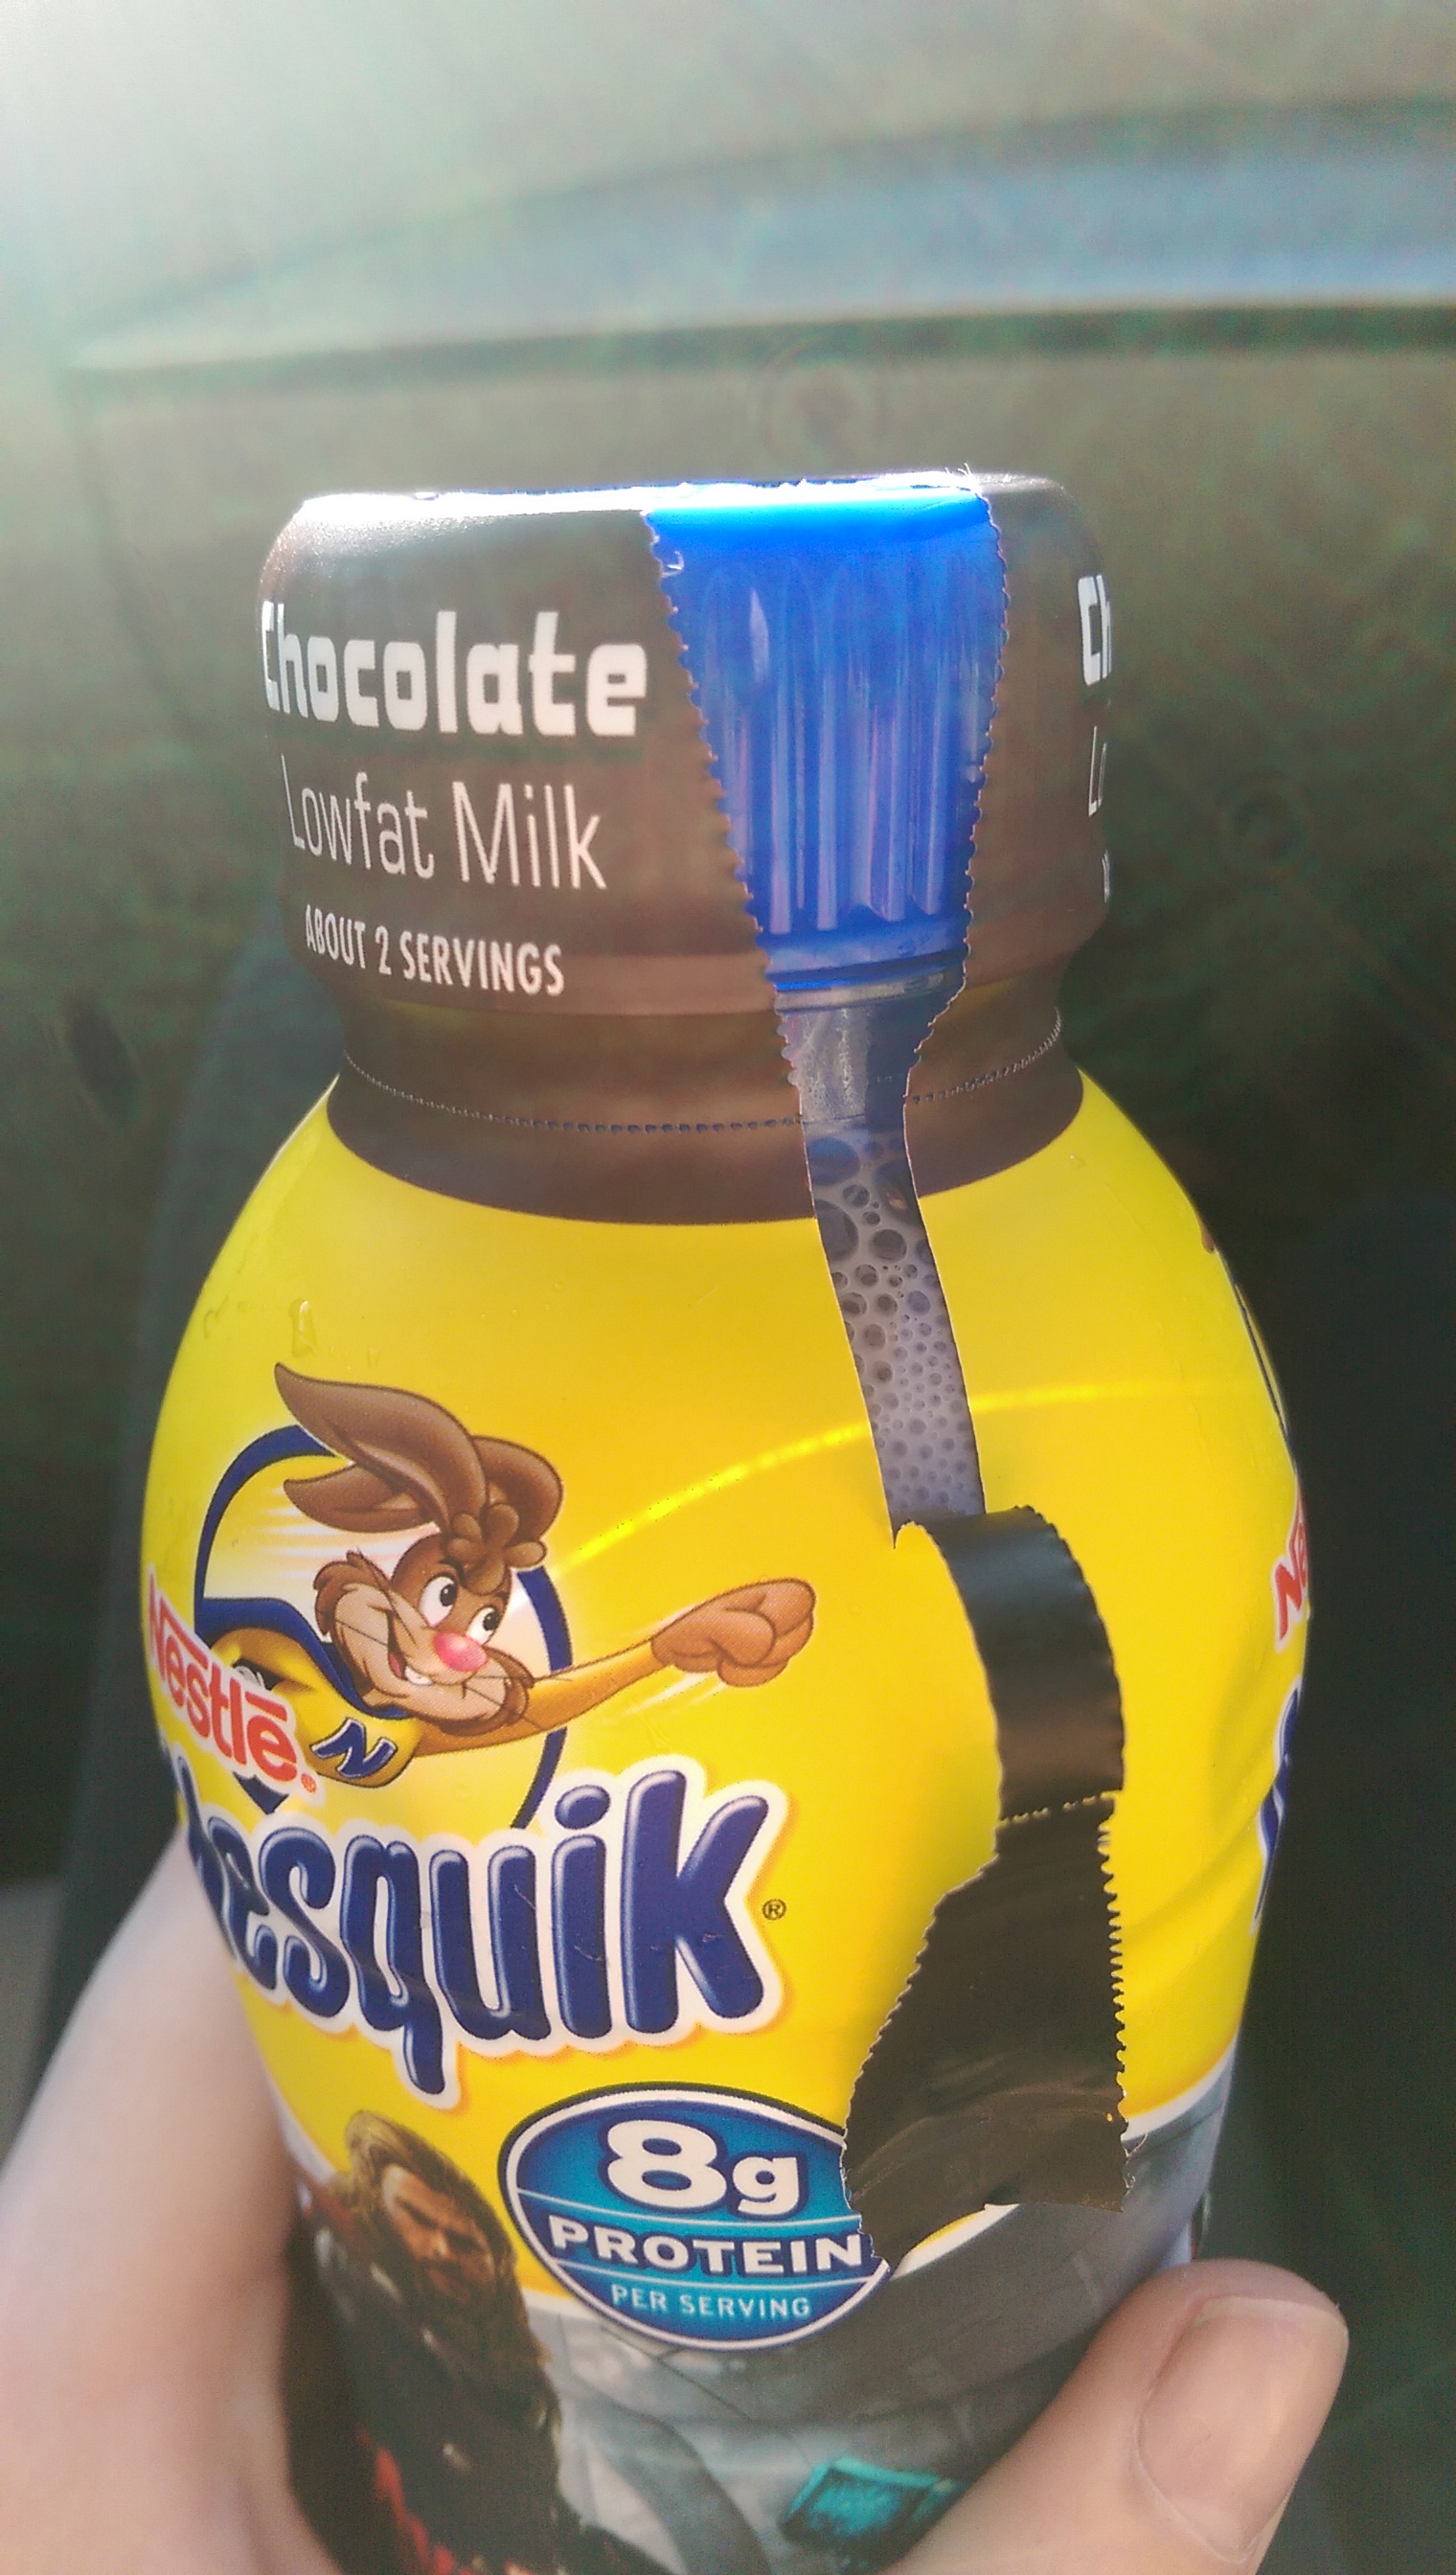 drink - Chocolate aufat Milk 2017.1 Servings bosquik 8g Protein